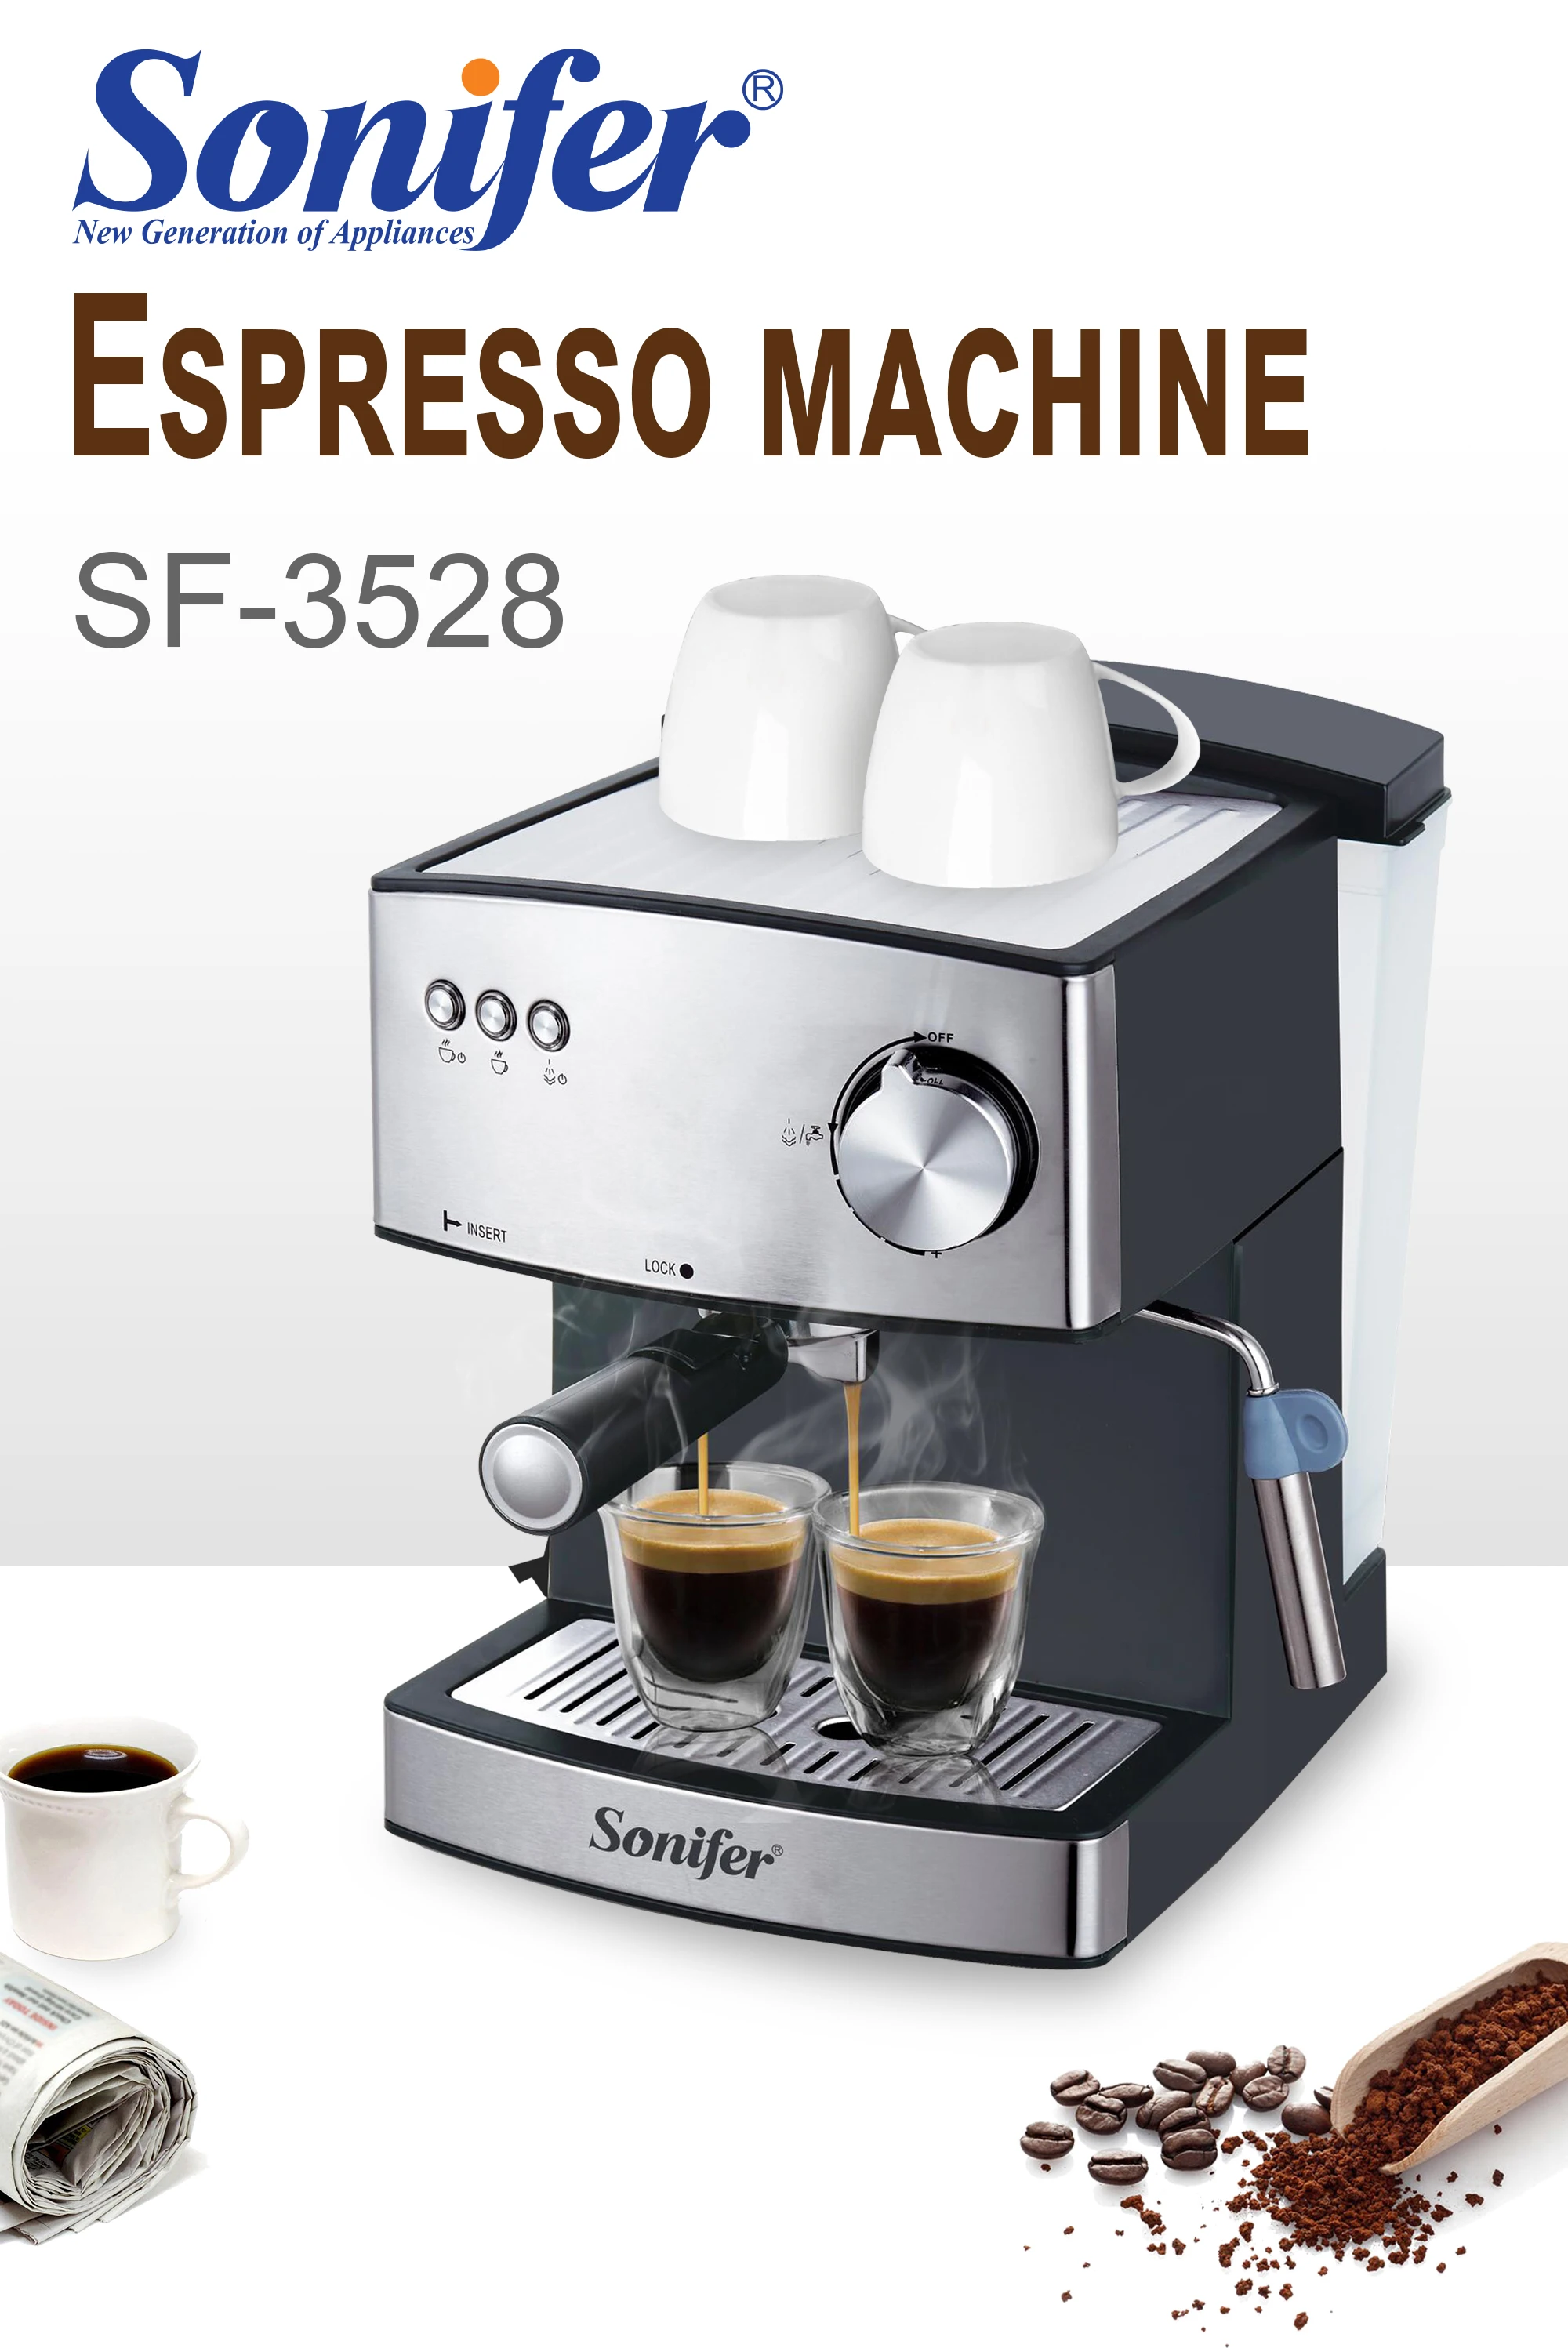 ماكينة القهوة اكسبيرسو مع دولتشي ميلك فروثر أجهزة مطبخ رغوة كهربائية صانع قهوة كابوتشينو هدية